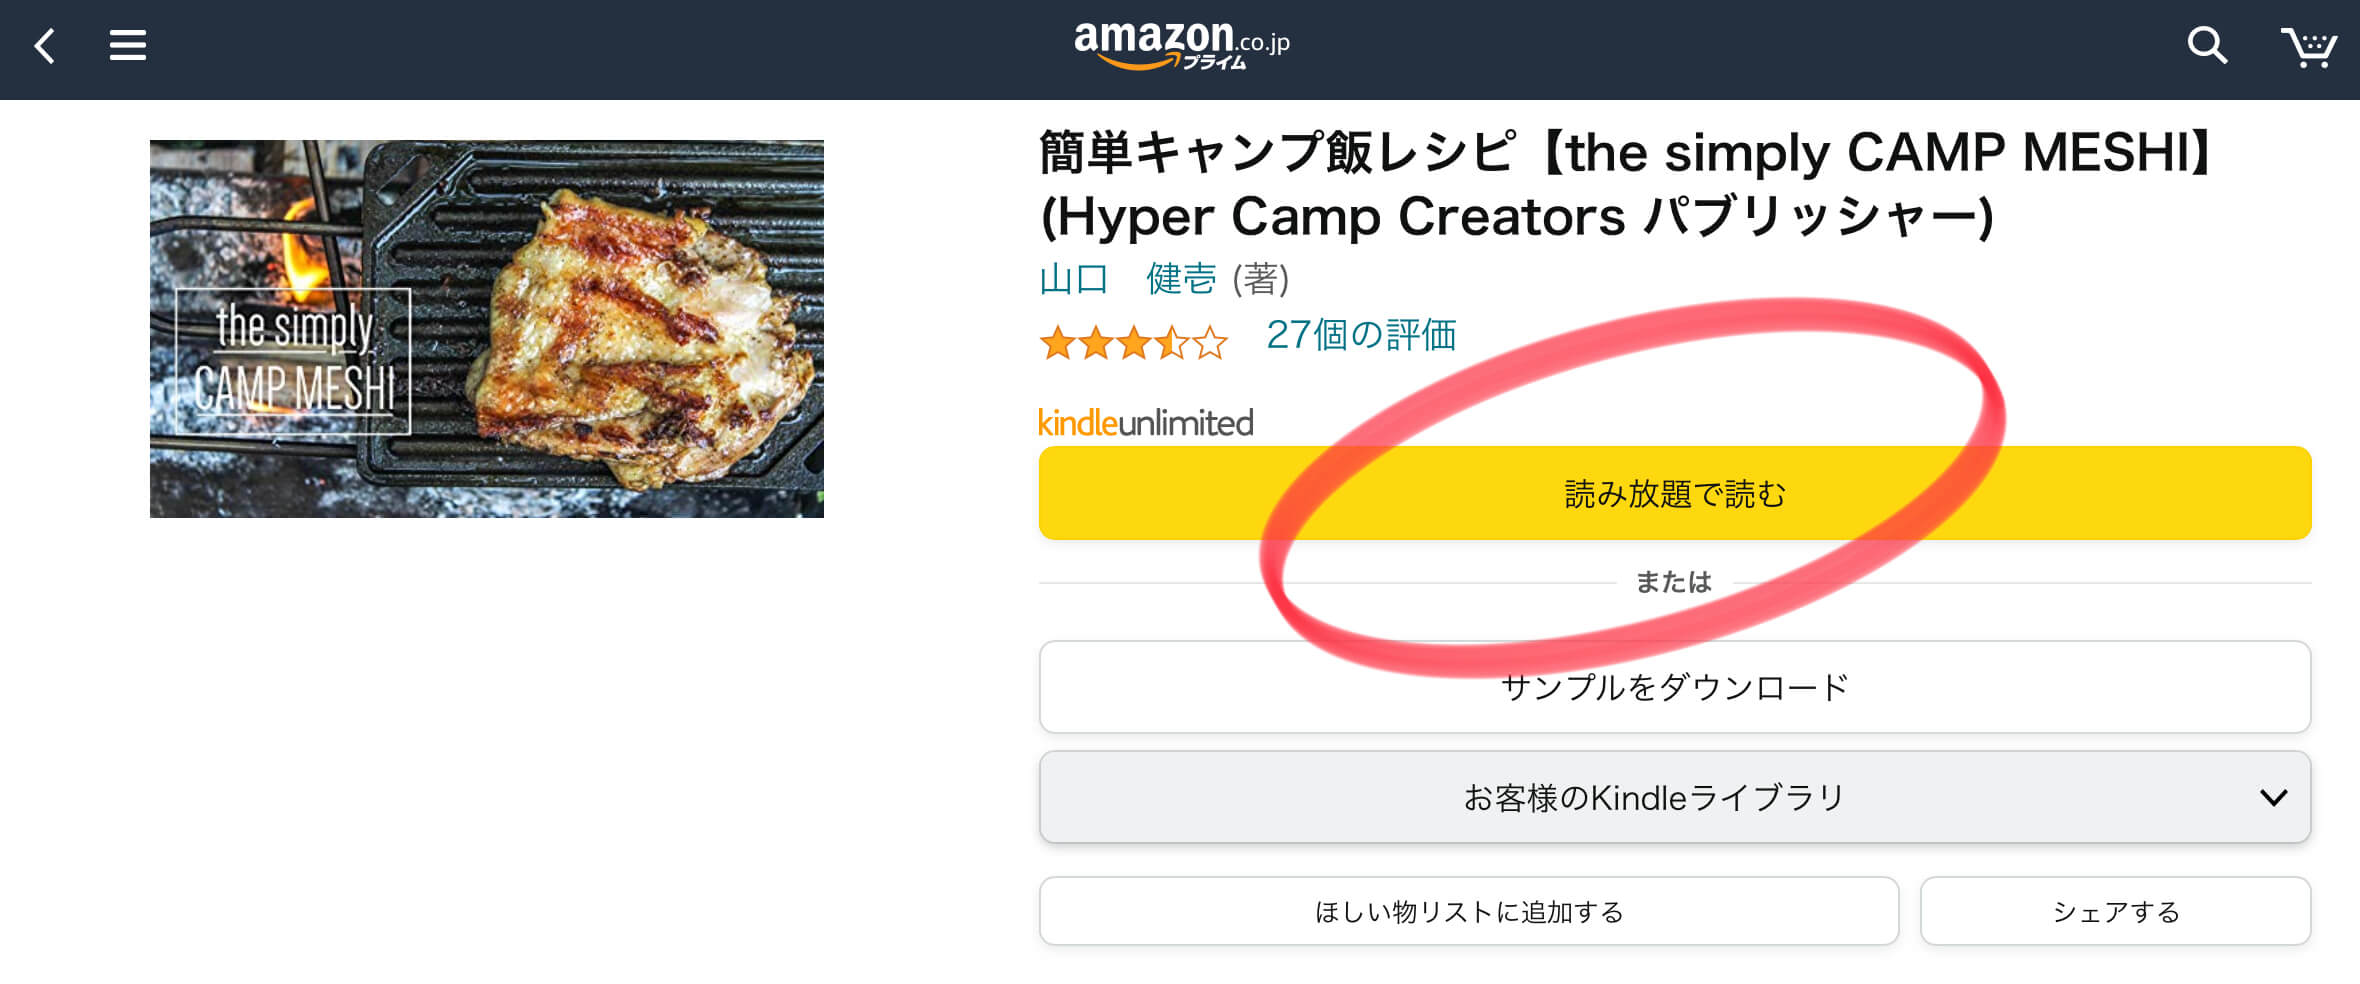 キャンプ飯レシピ本をたった99円で大量ゲット Amazon Kindle Unlimited3ヶ月99円キャンペーンがお得すぎる D A